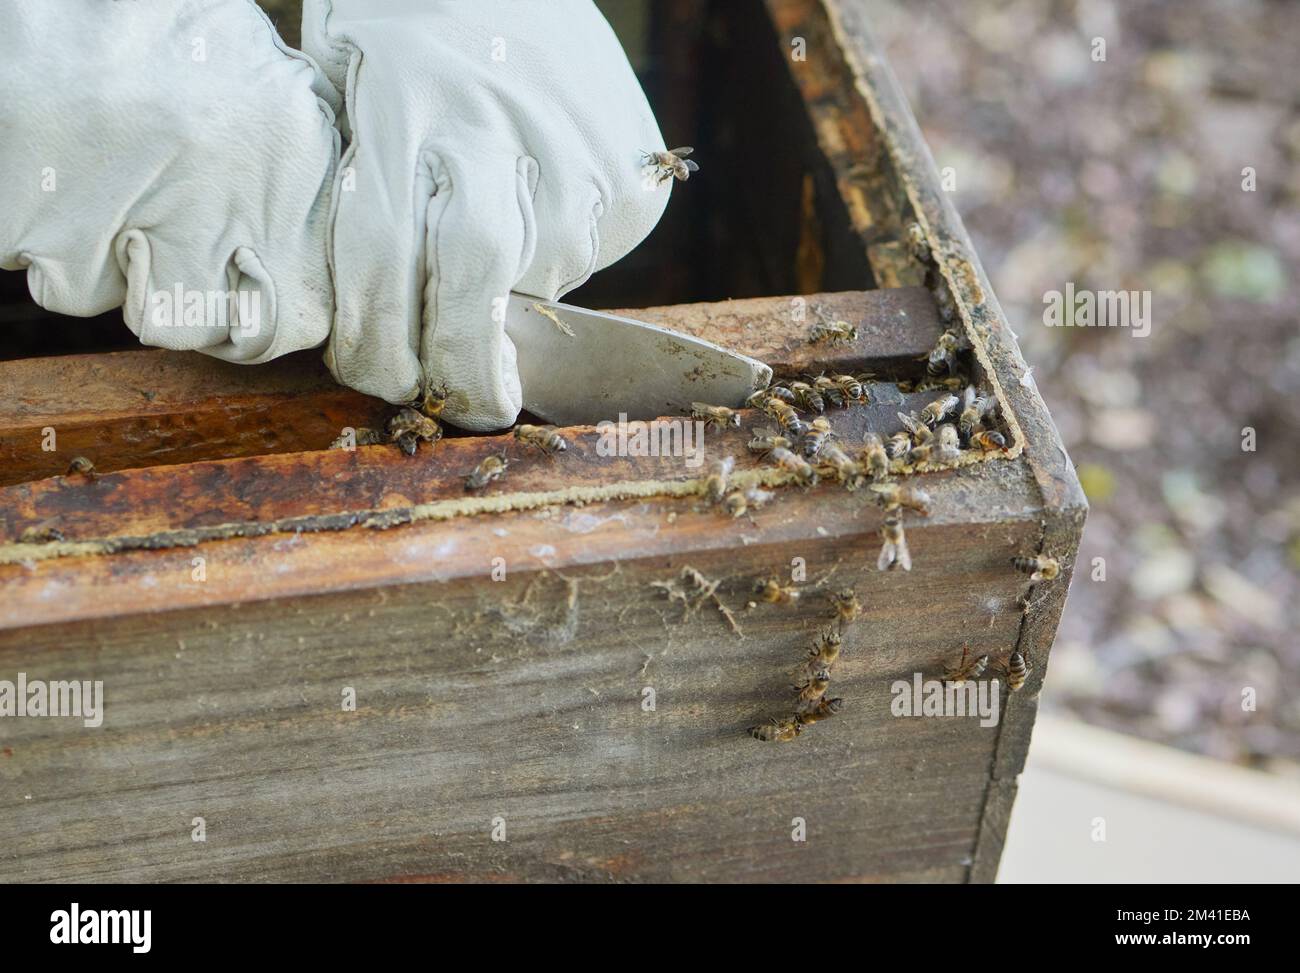 Le mani dell'apicoltore, la produzione di miele e il commercio delle api in agricoltura allevamento delle api per il nido d'ape. Lavoro, agricoltura e sostenibilità ecologica raccolto Foto Stock